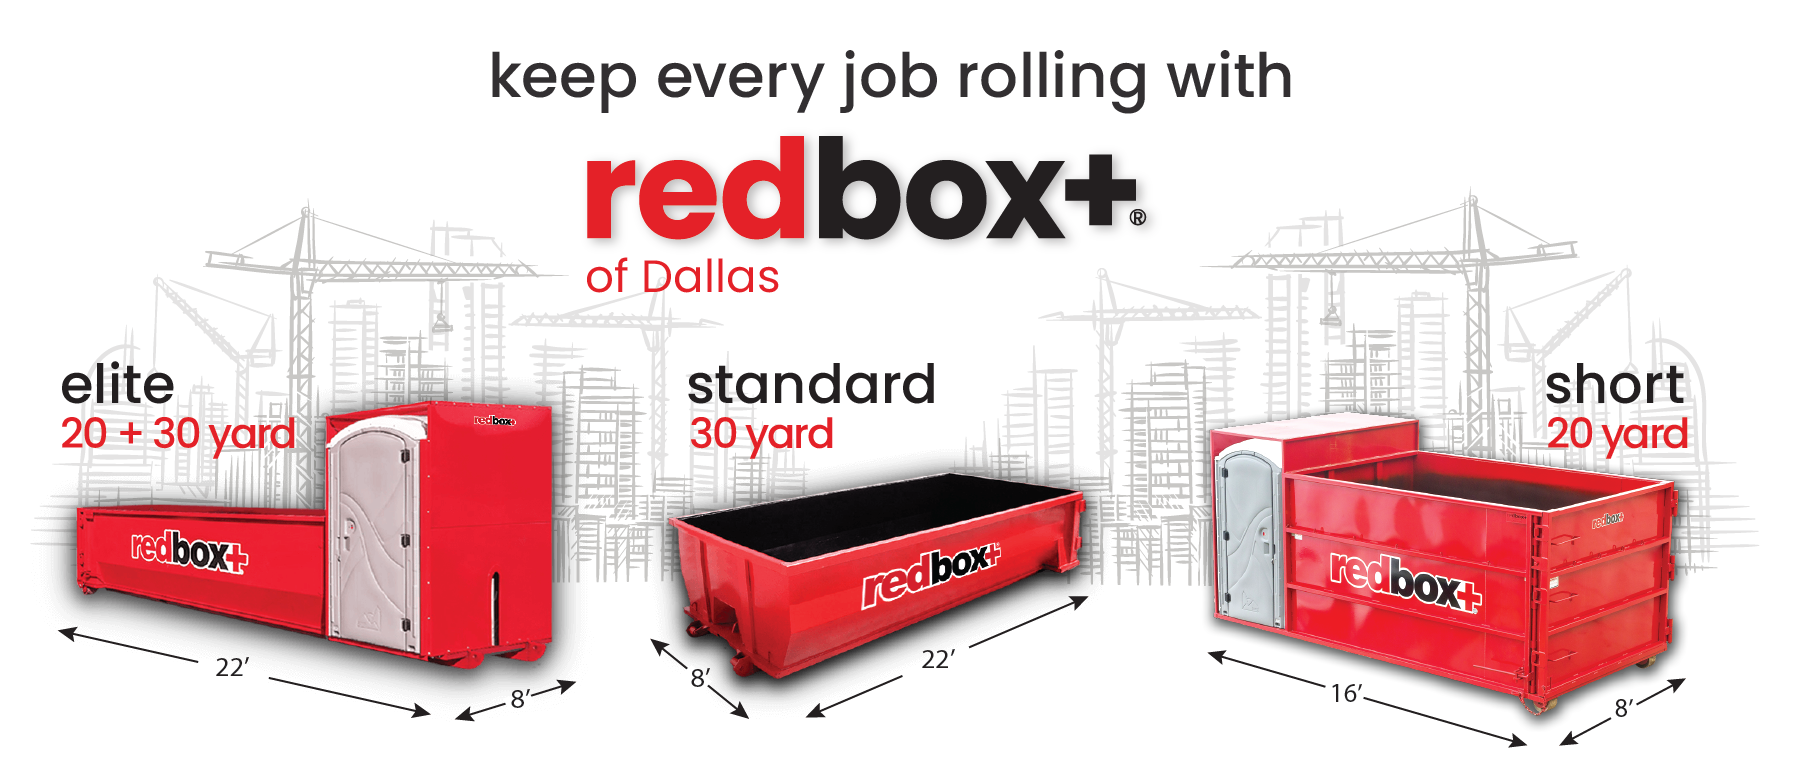 redbox+ of Dallas